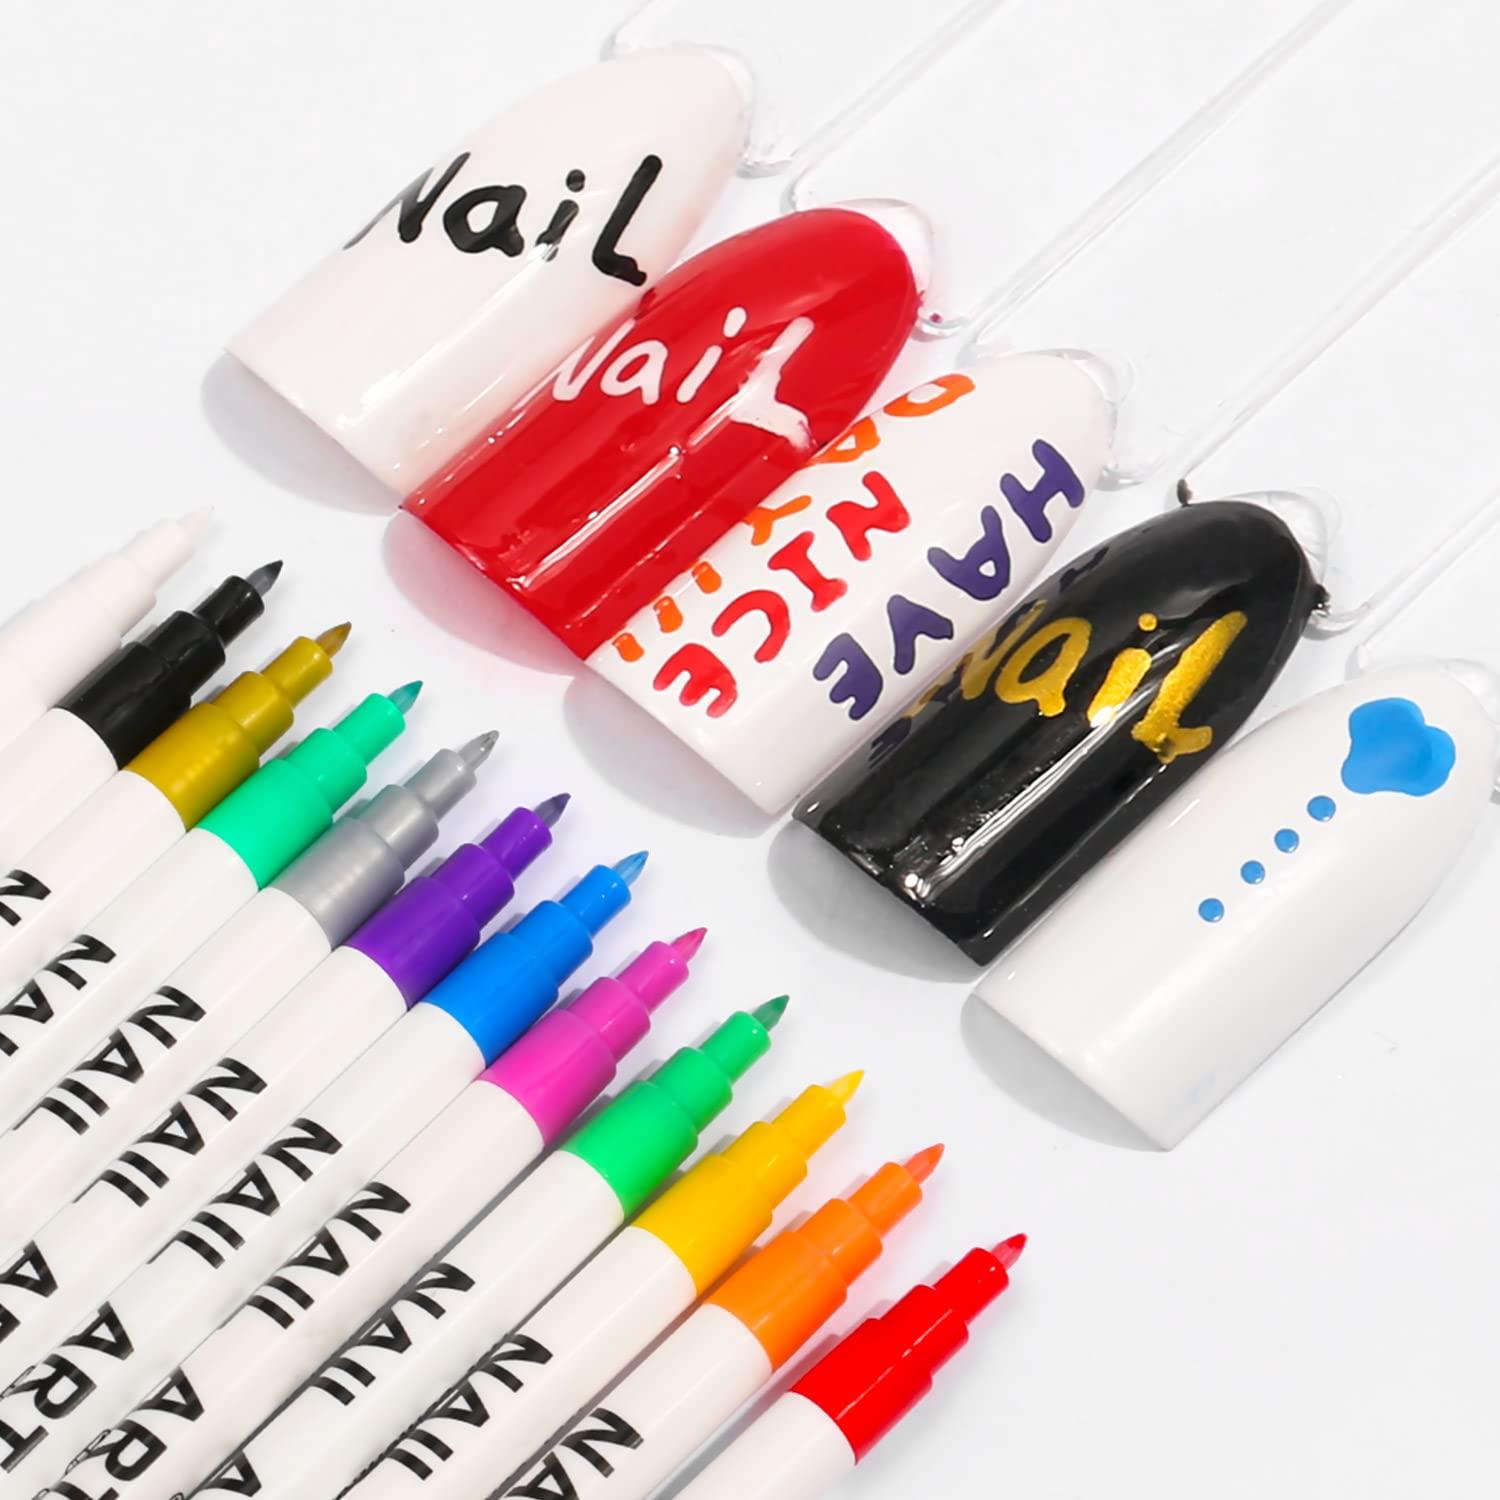 12pcs Mixed Color Waterproof Marker Pen